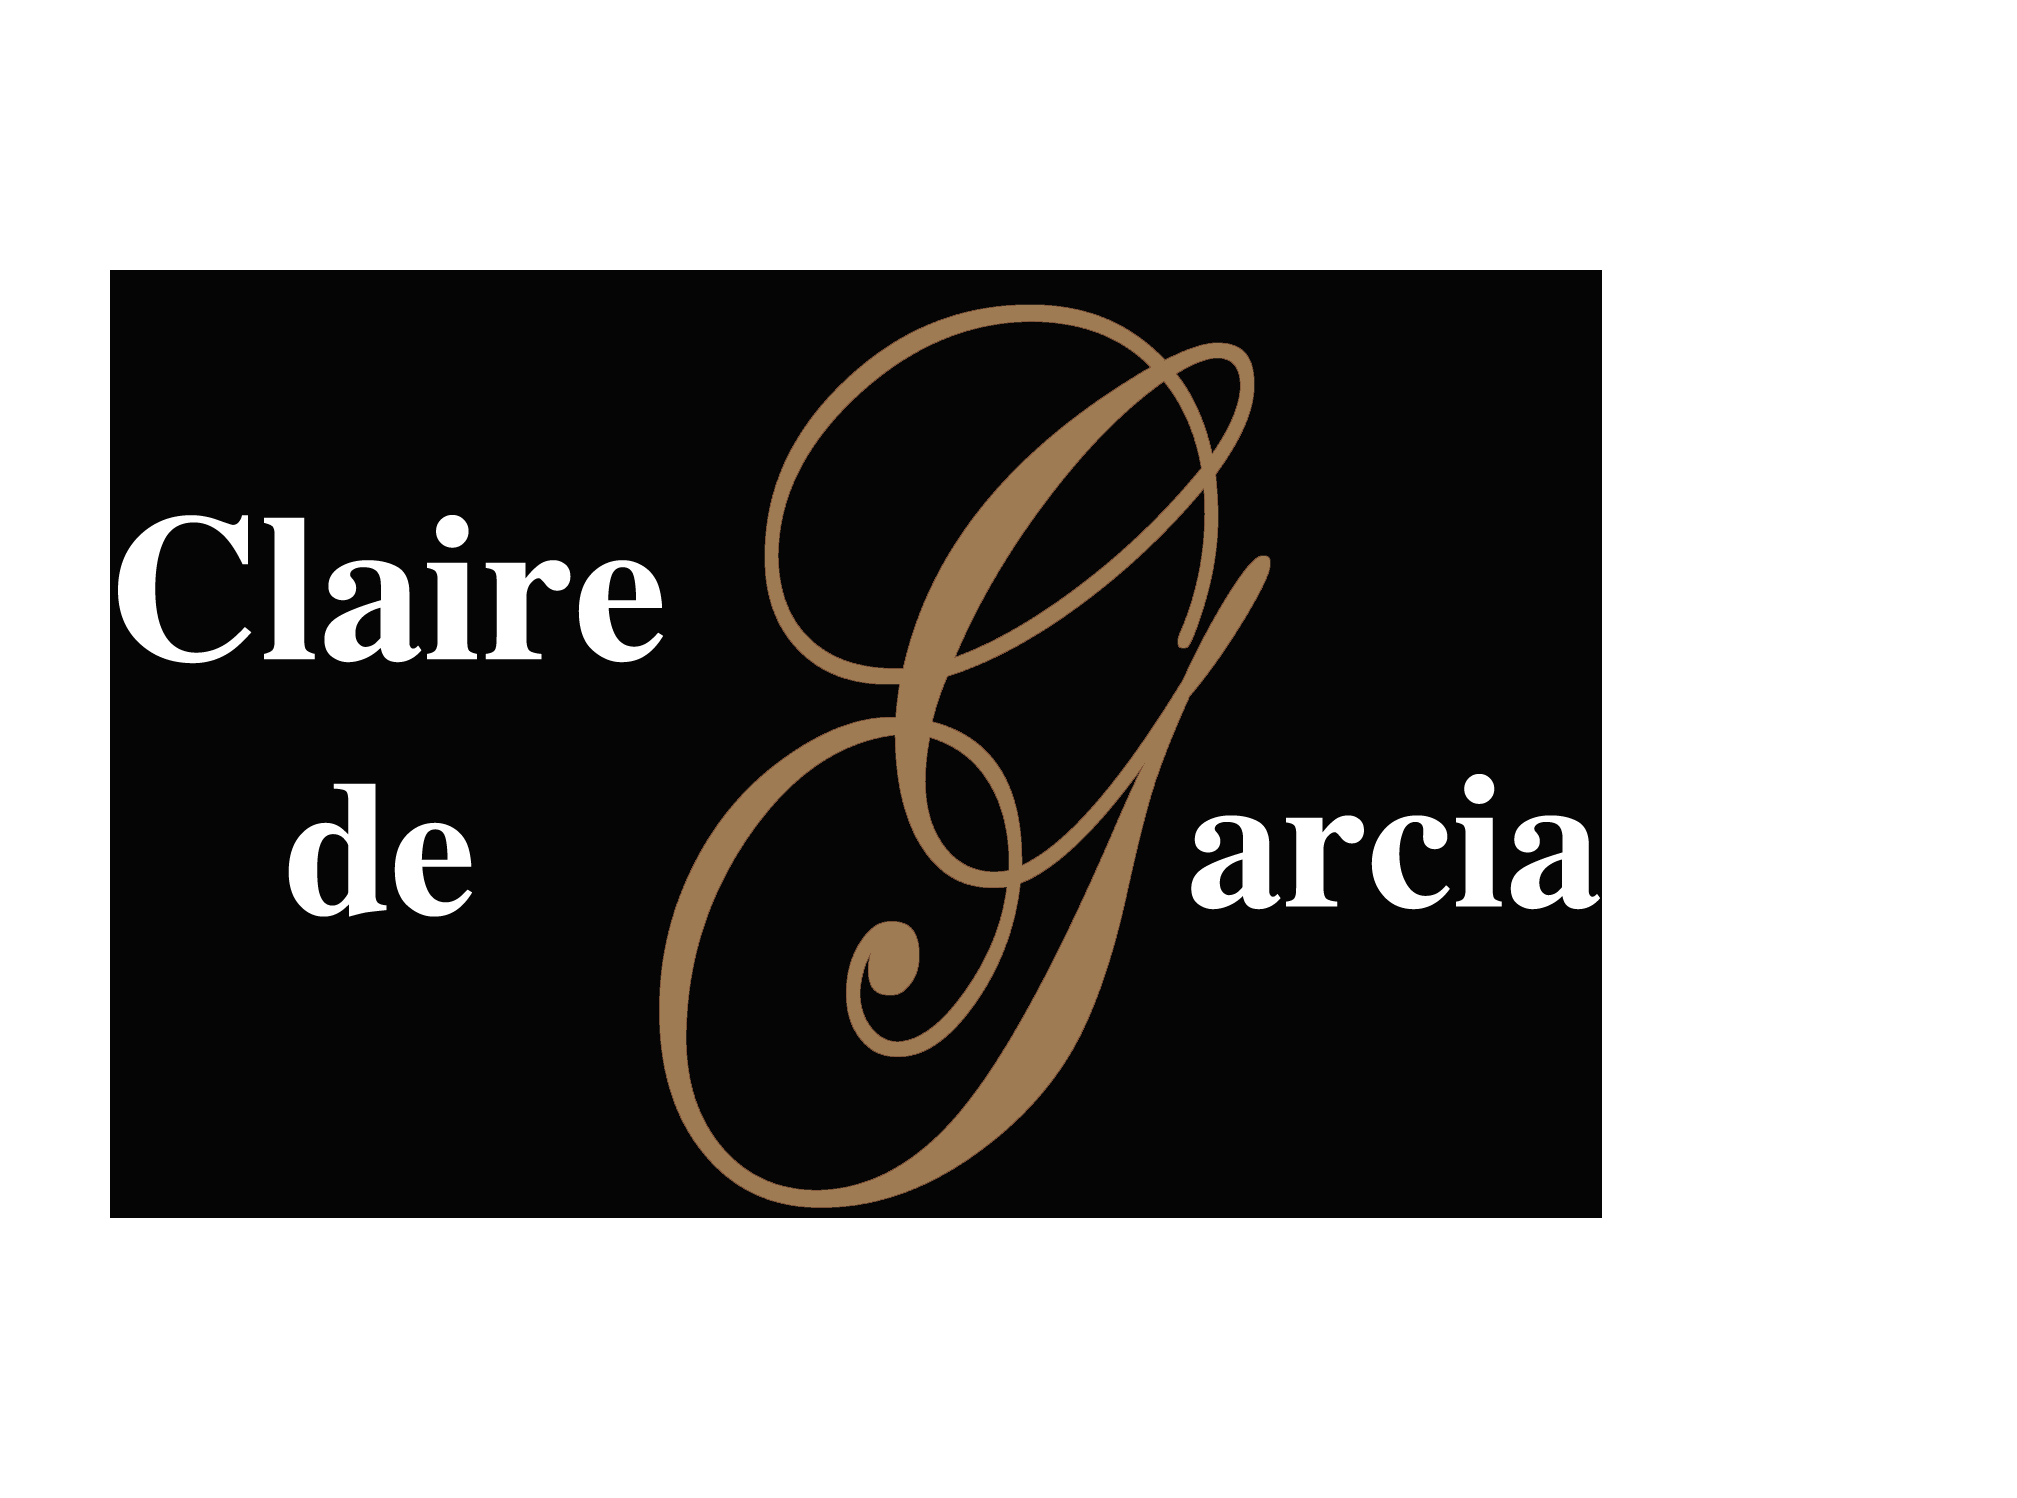 Claire de Garcia